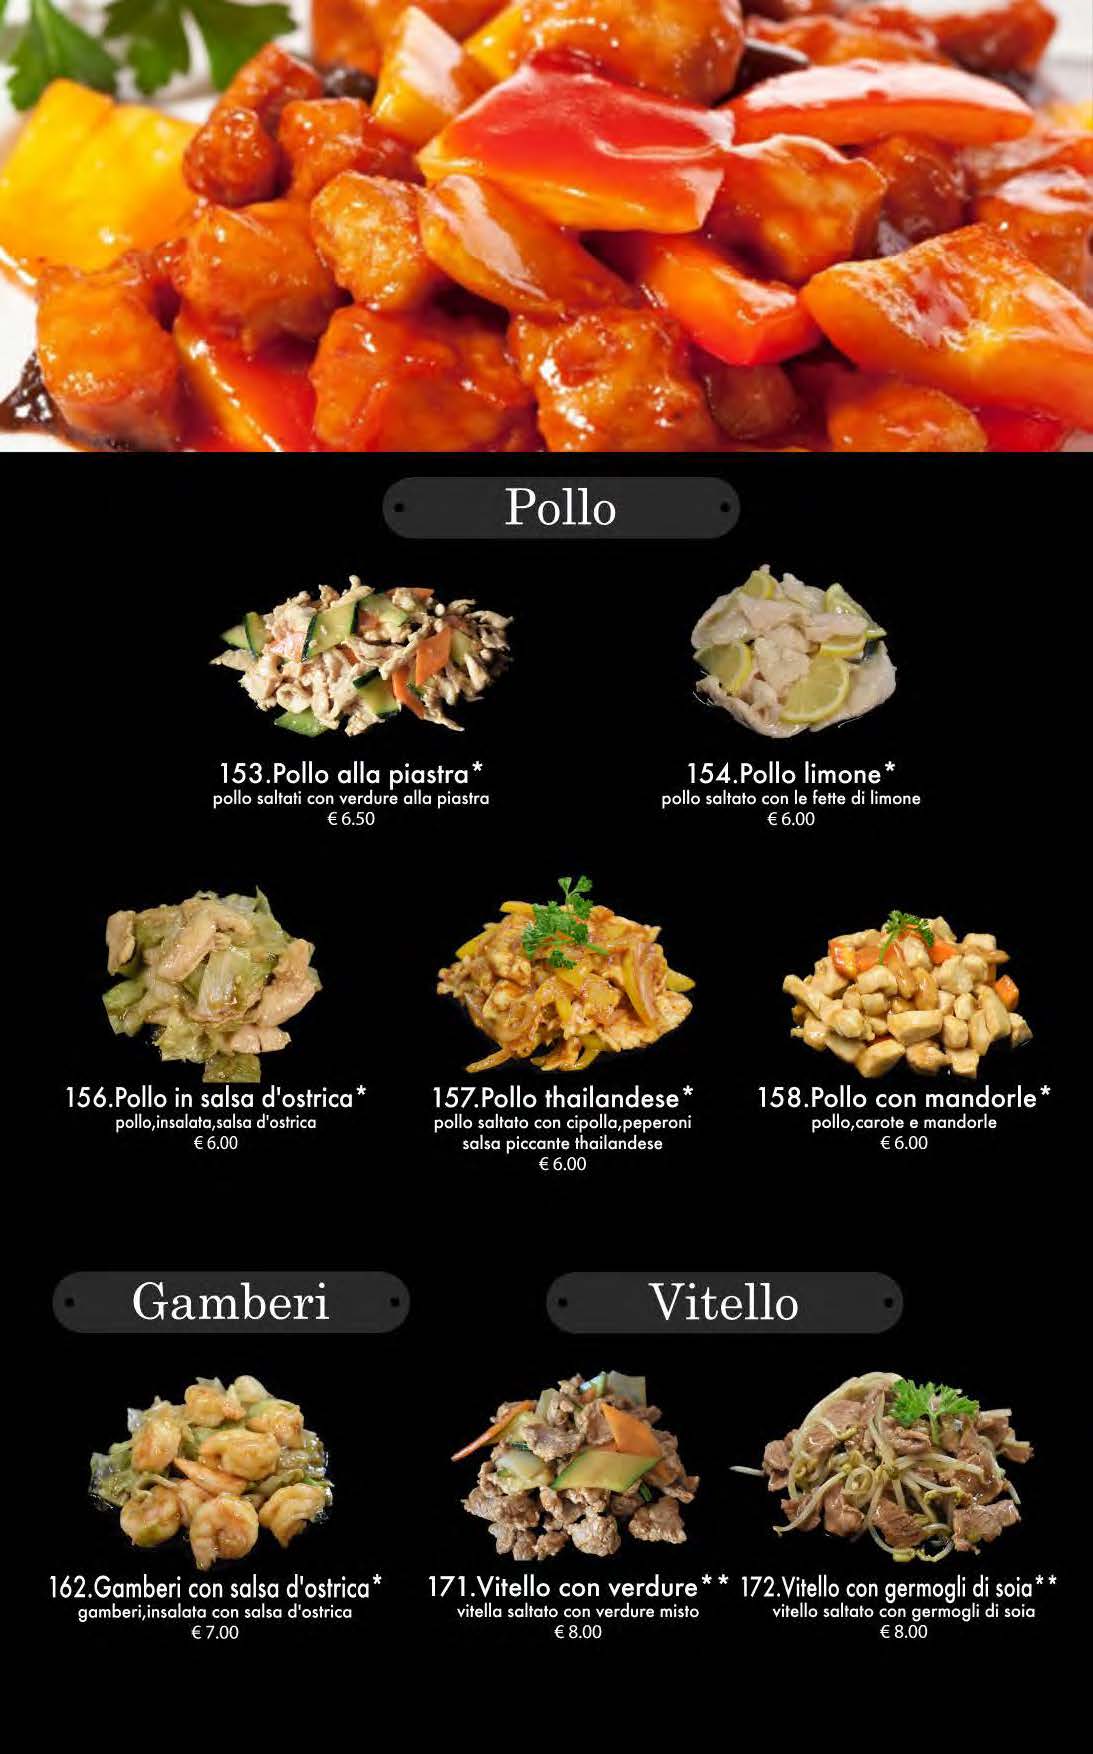 attimi ristorante giapponese padova menù pranzo pagina 09 pollo gamberi vitello